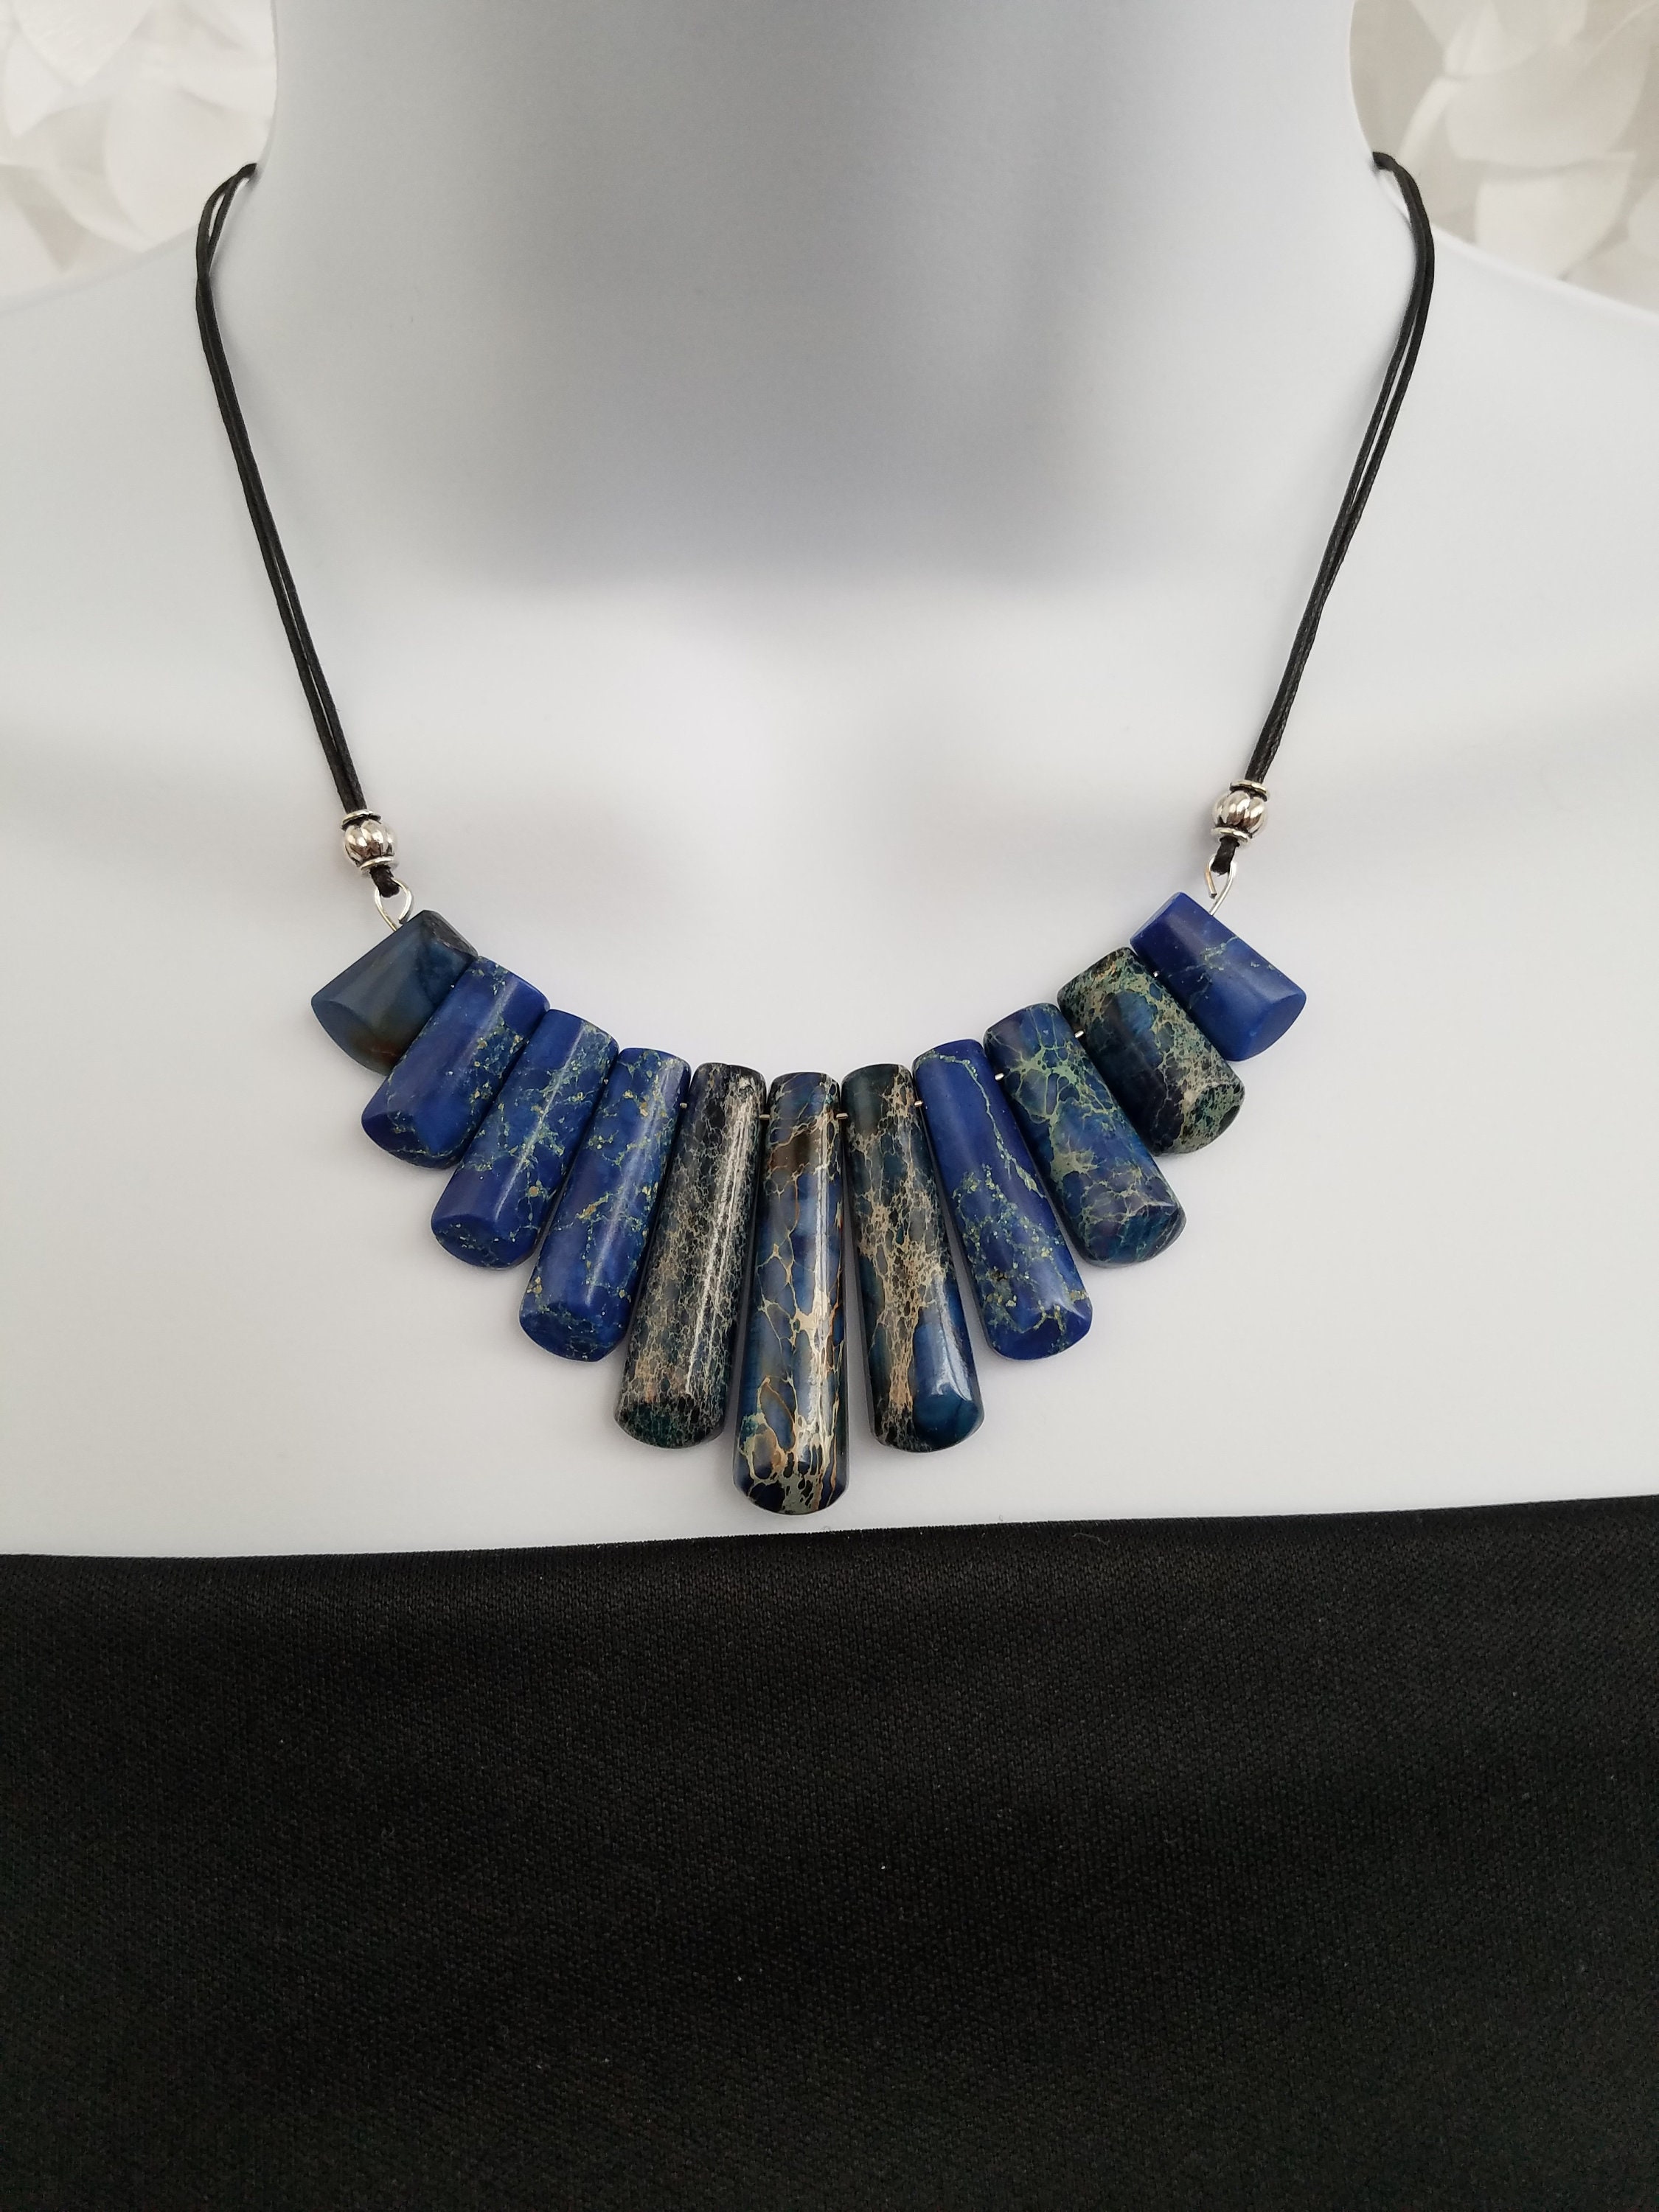 Elegant Blue & Taupe Swirled Bib Necklace